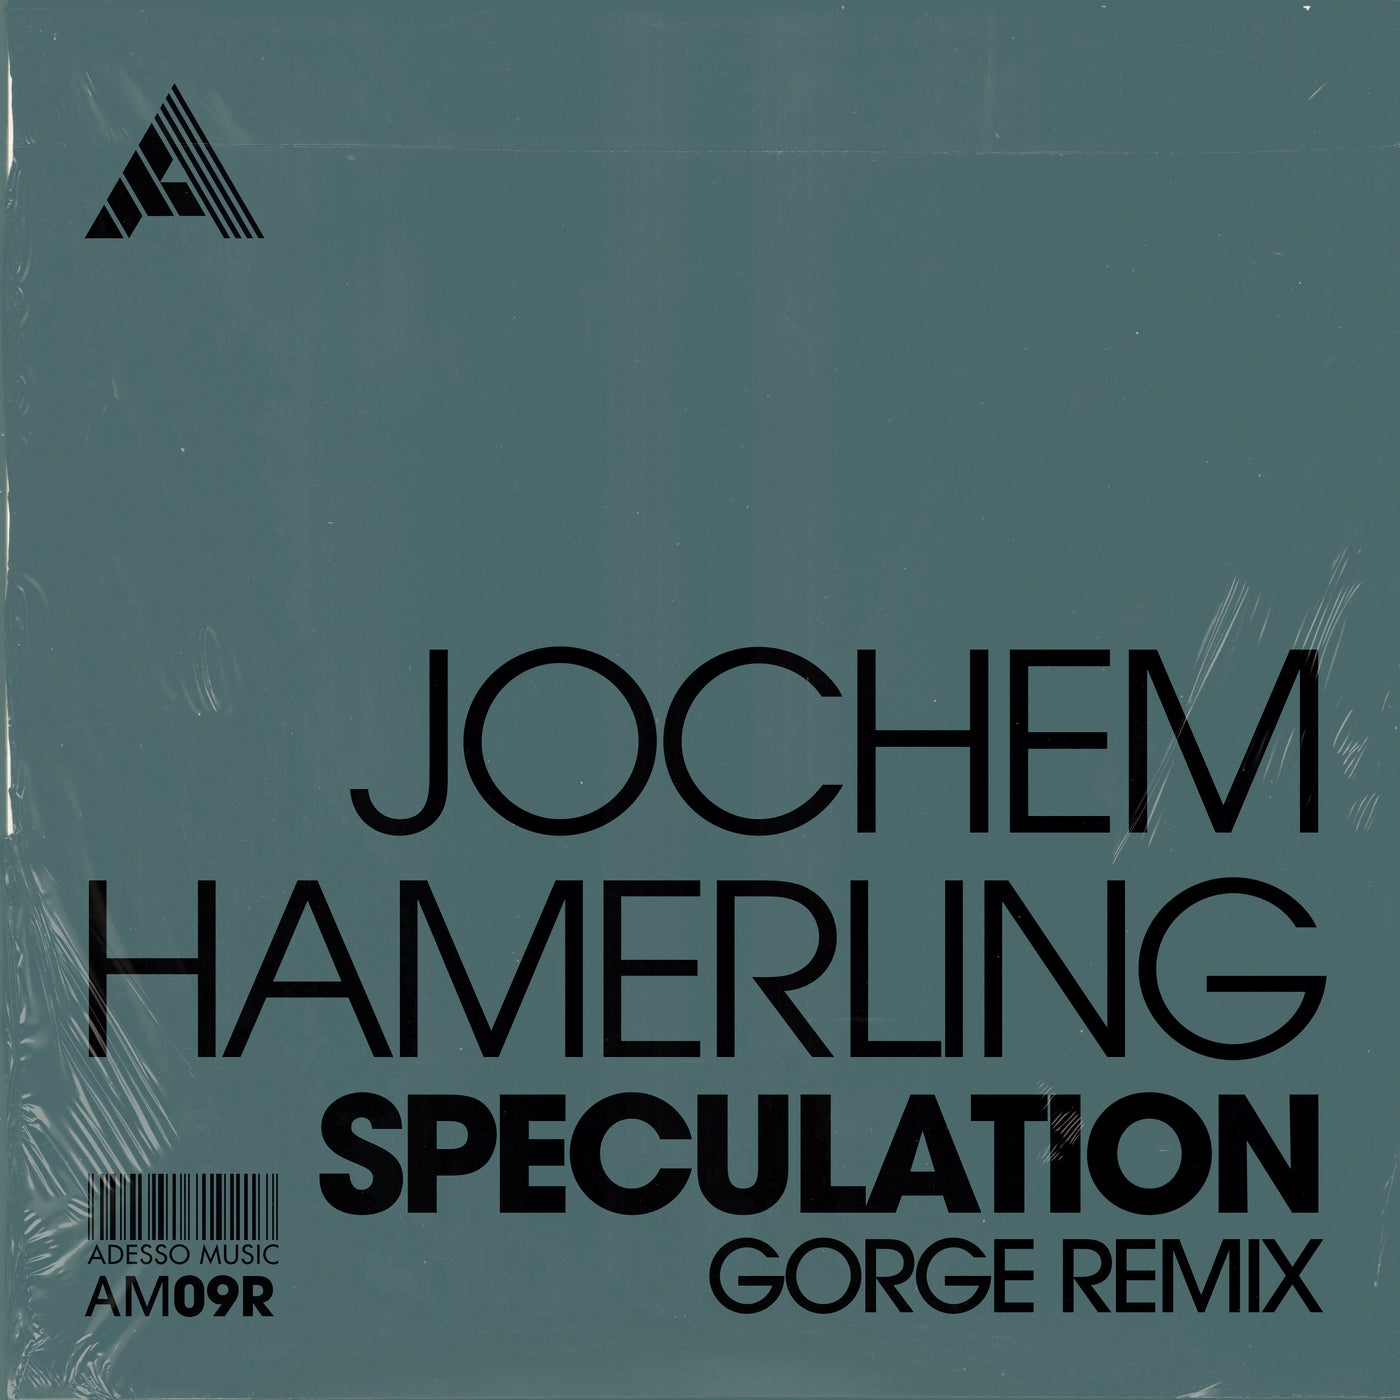 image cover: Jochem Hamerling - Speculation (Gorge Remix) - Extended Mix / AM09R2